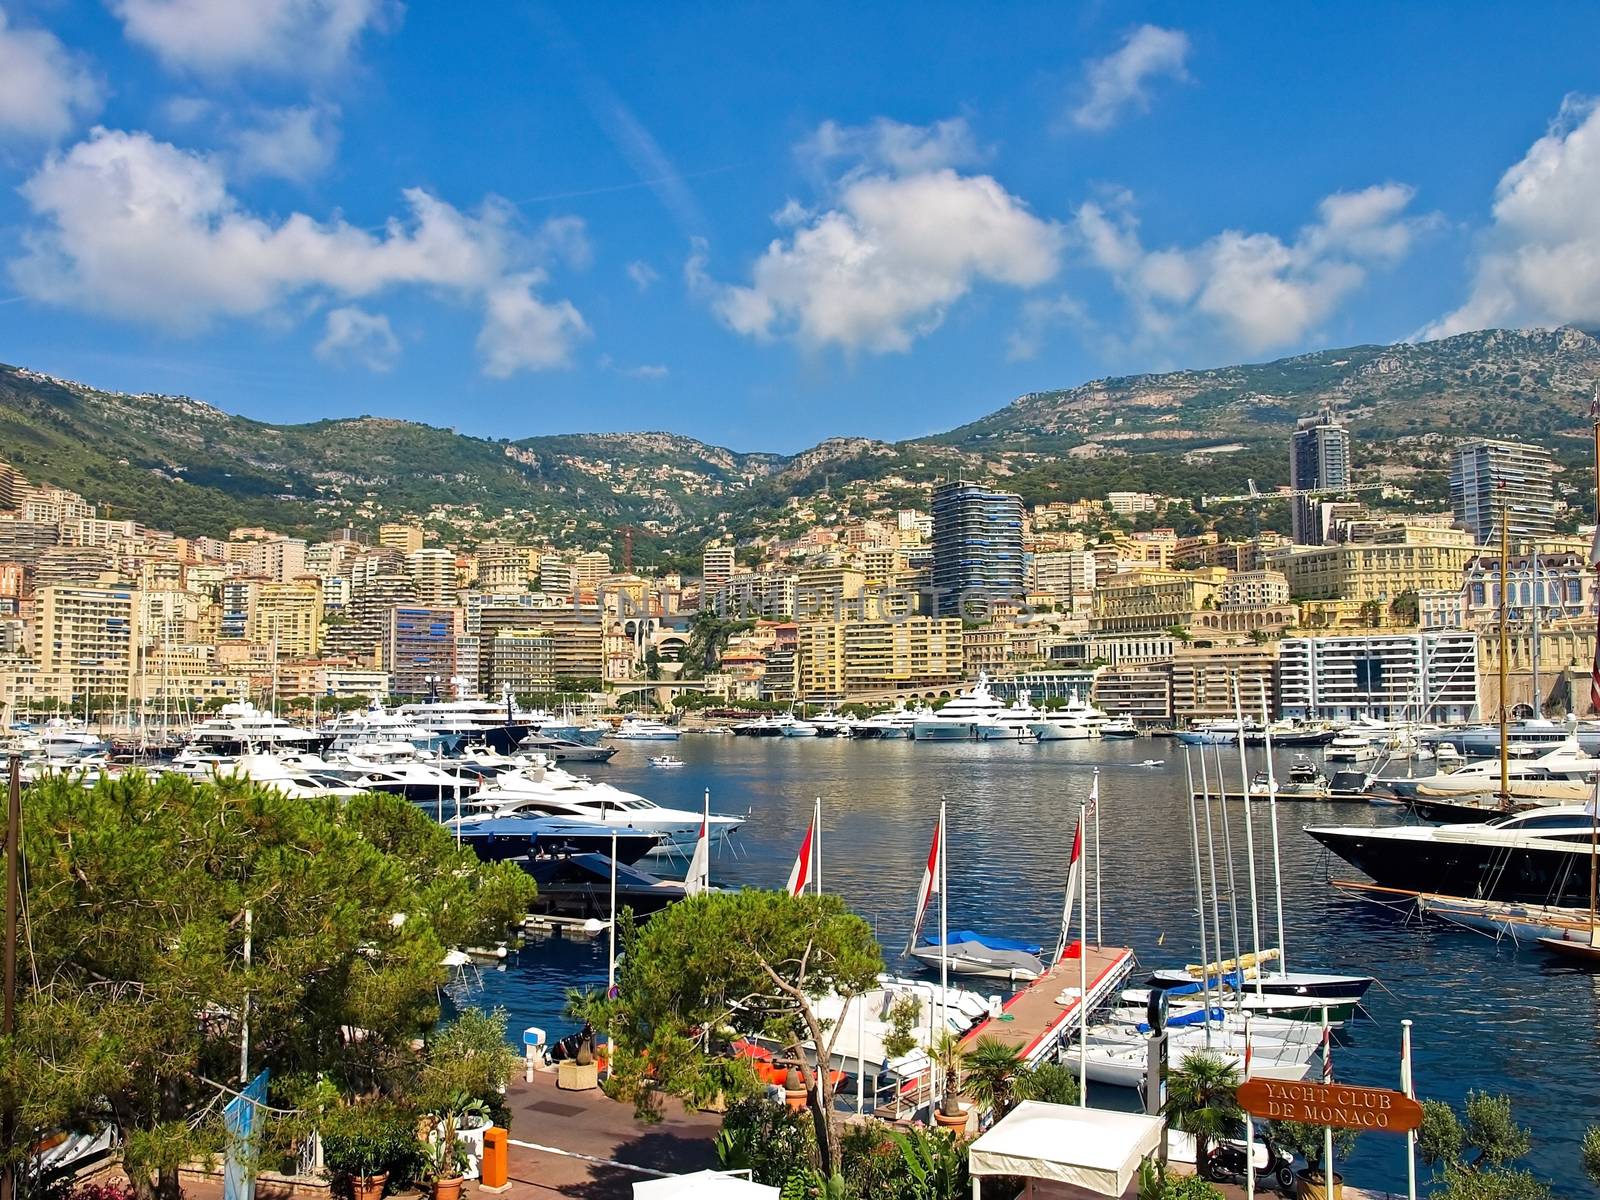 Yacht Club de Monaco by Venakr